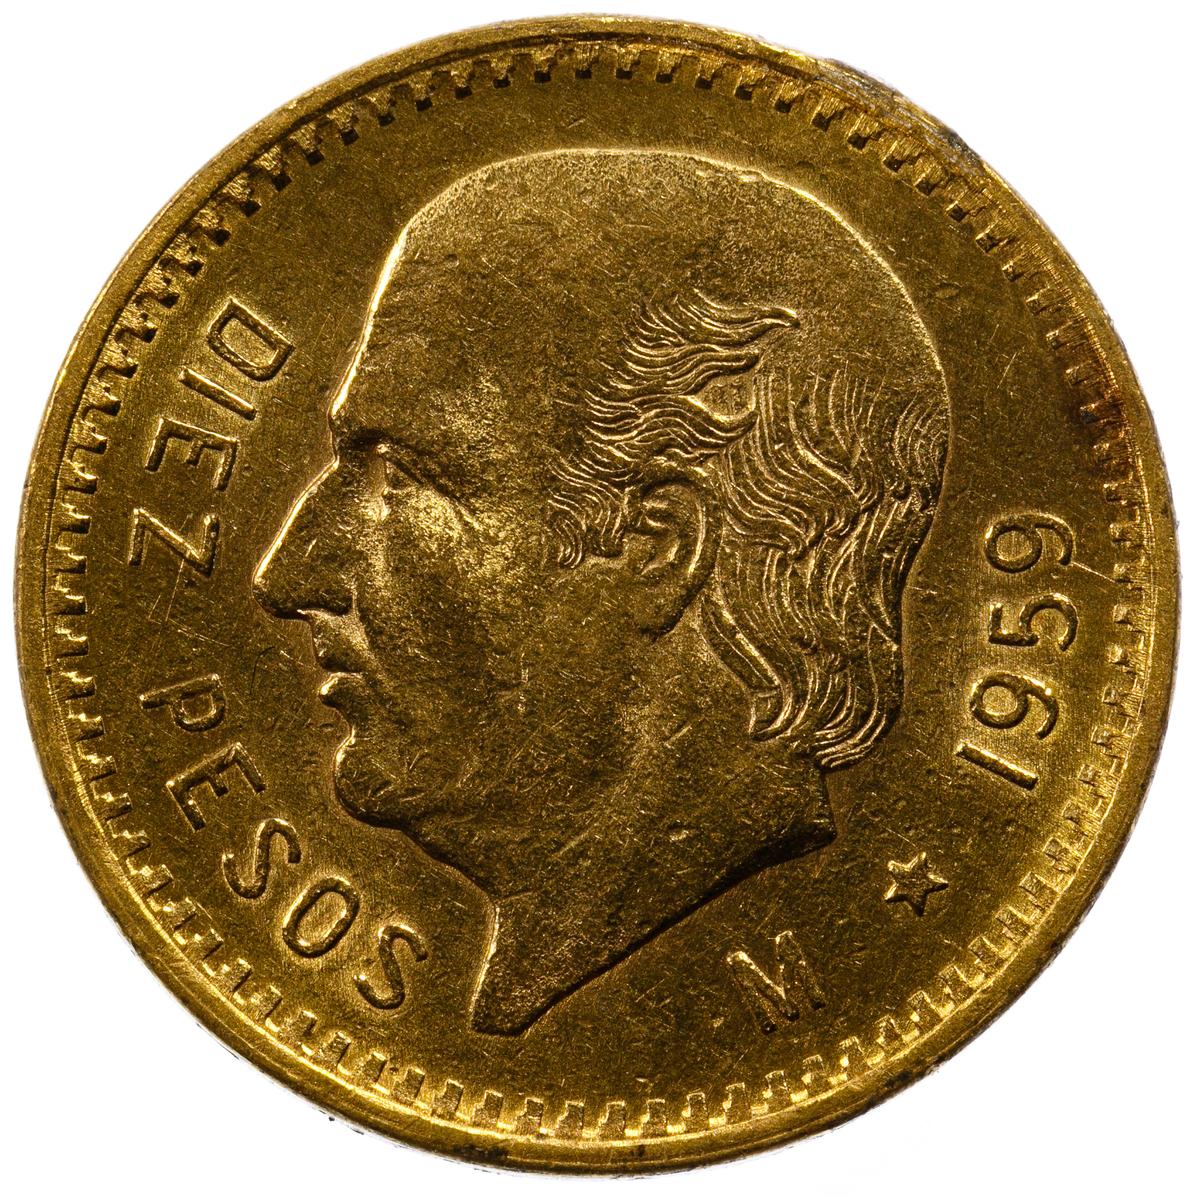 Mexico: 1959 10 Peso Gold